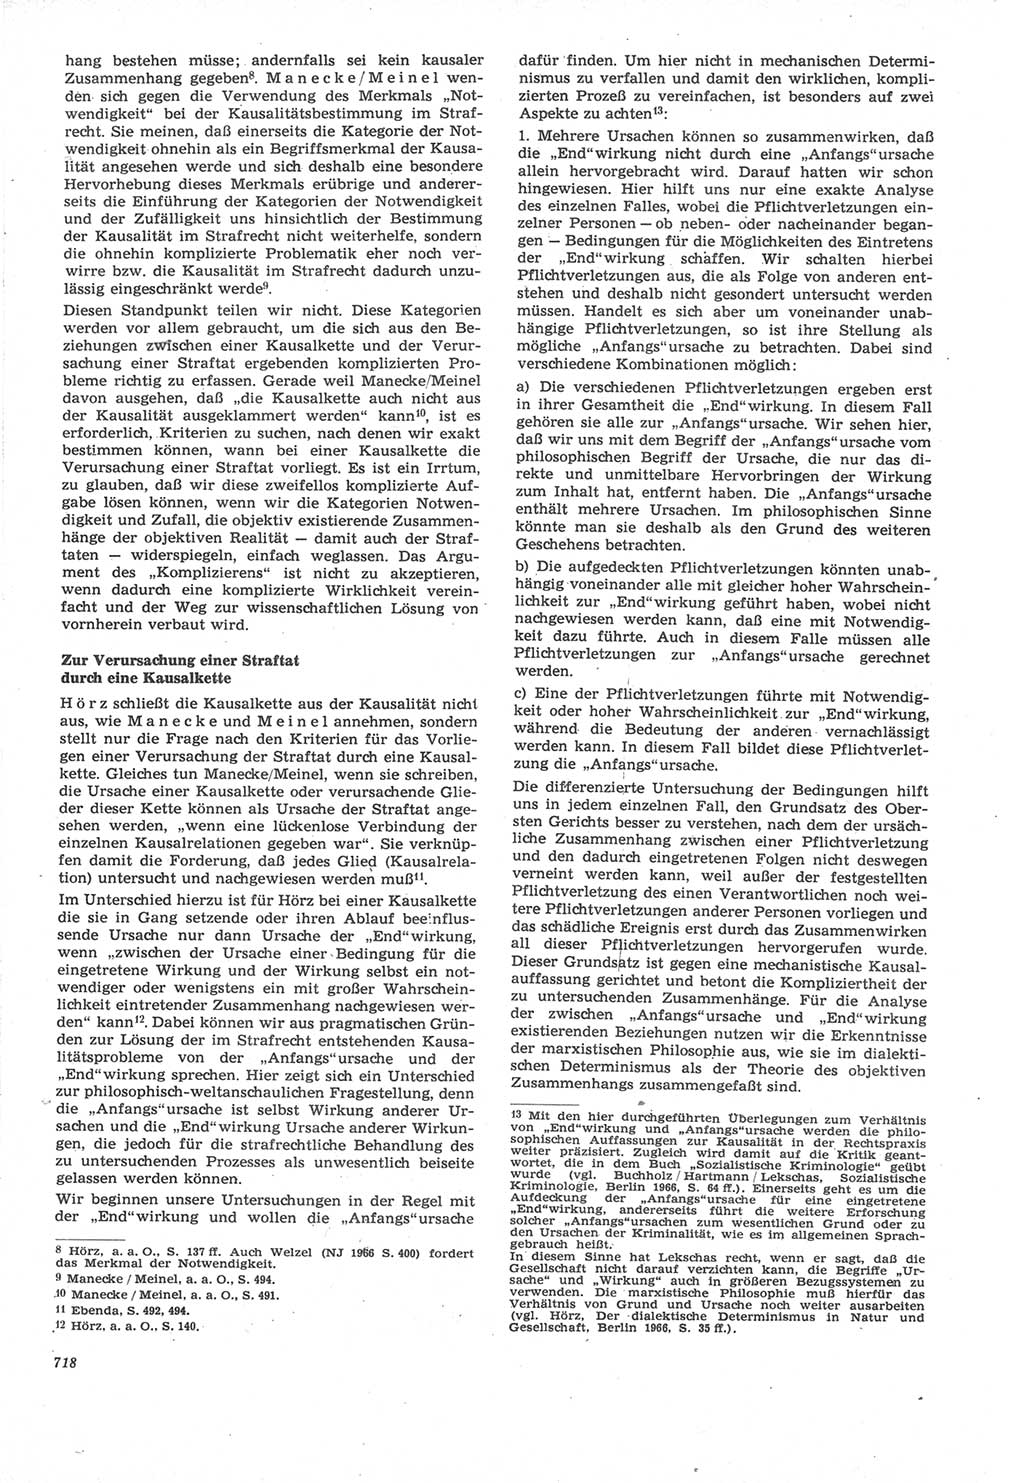 Neue Justiz (NJ), Zeitschrift für Recht und Rechtswissenschaft [Deutsche Demokratische Republik (DDR)], 22. Jahrgang 1968, Seite 718 (NJ DDR 1968, S. 718)